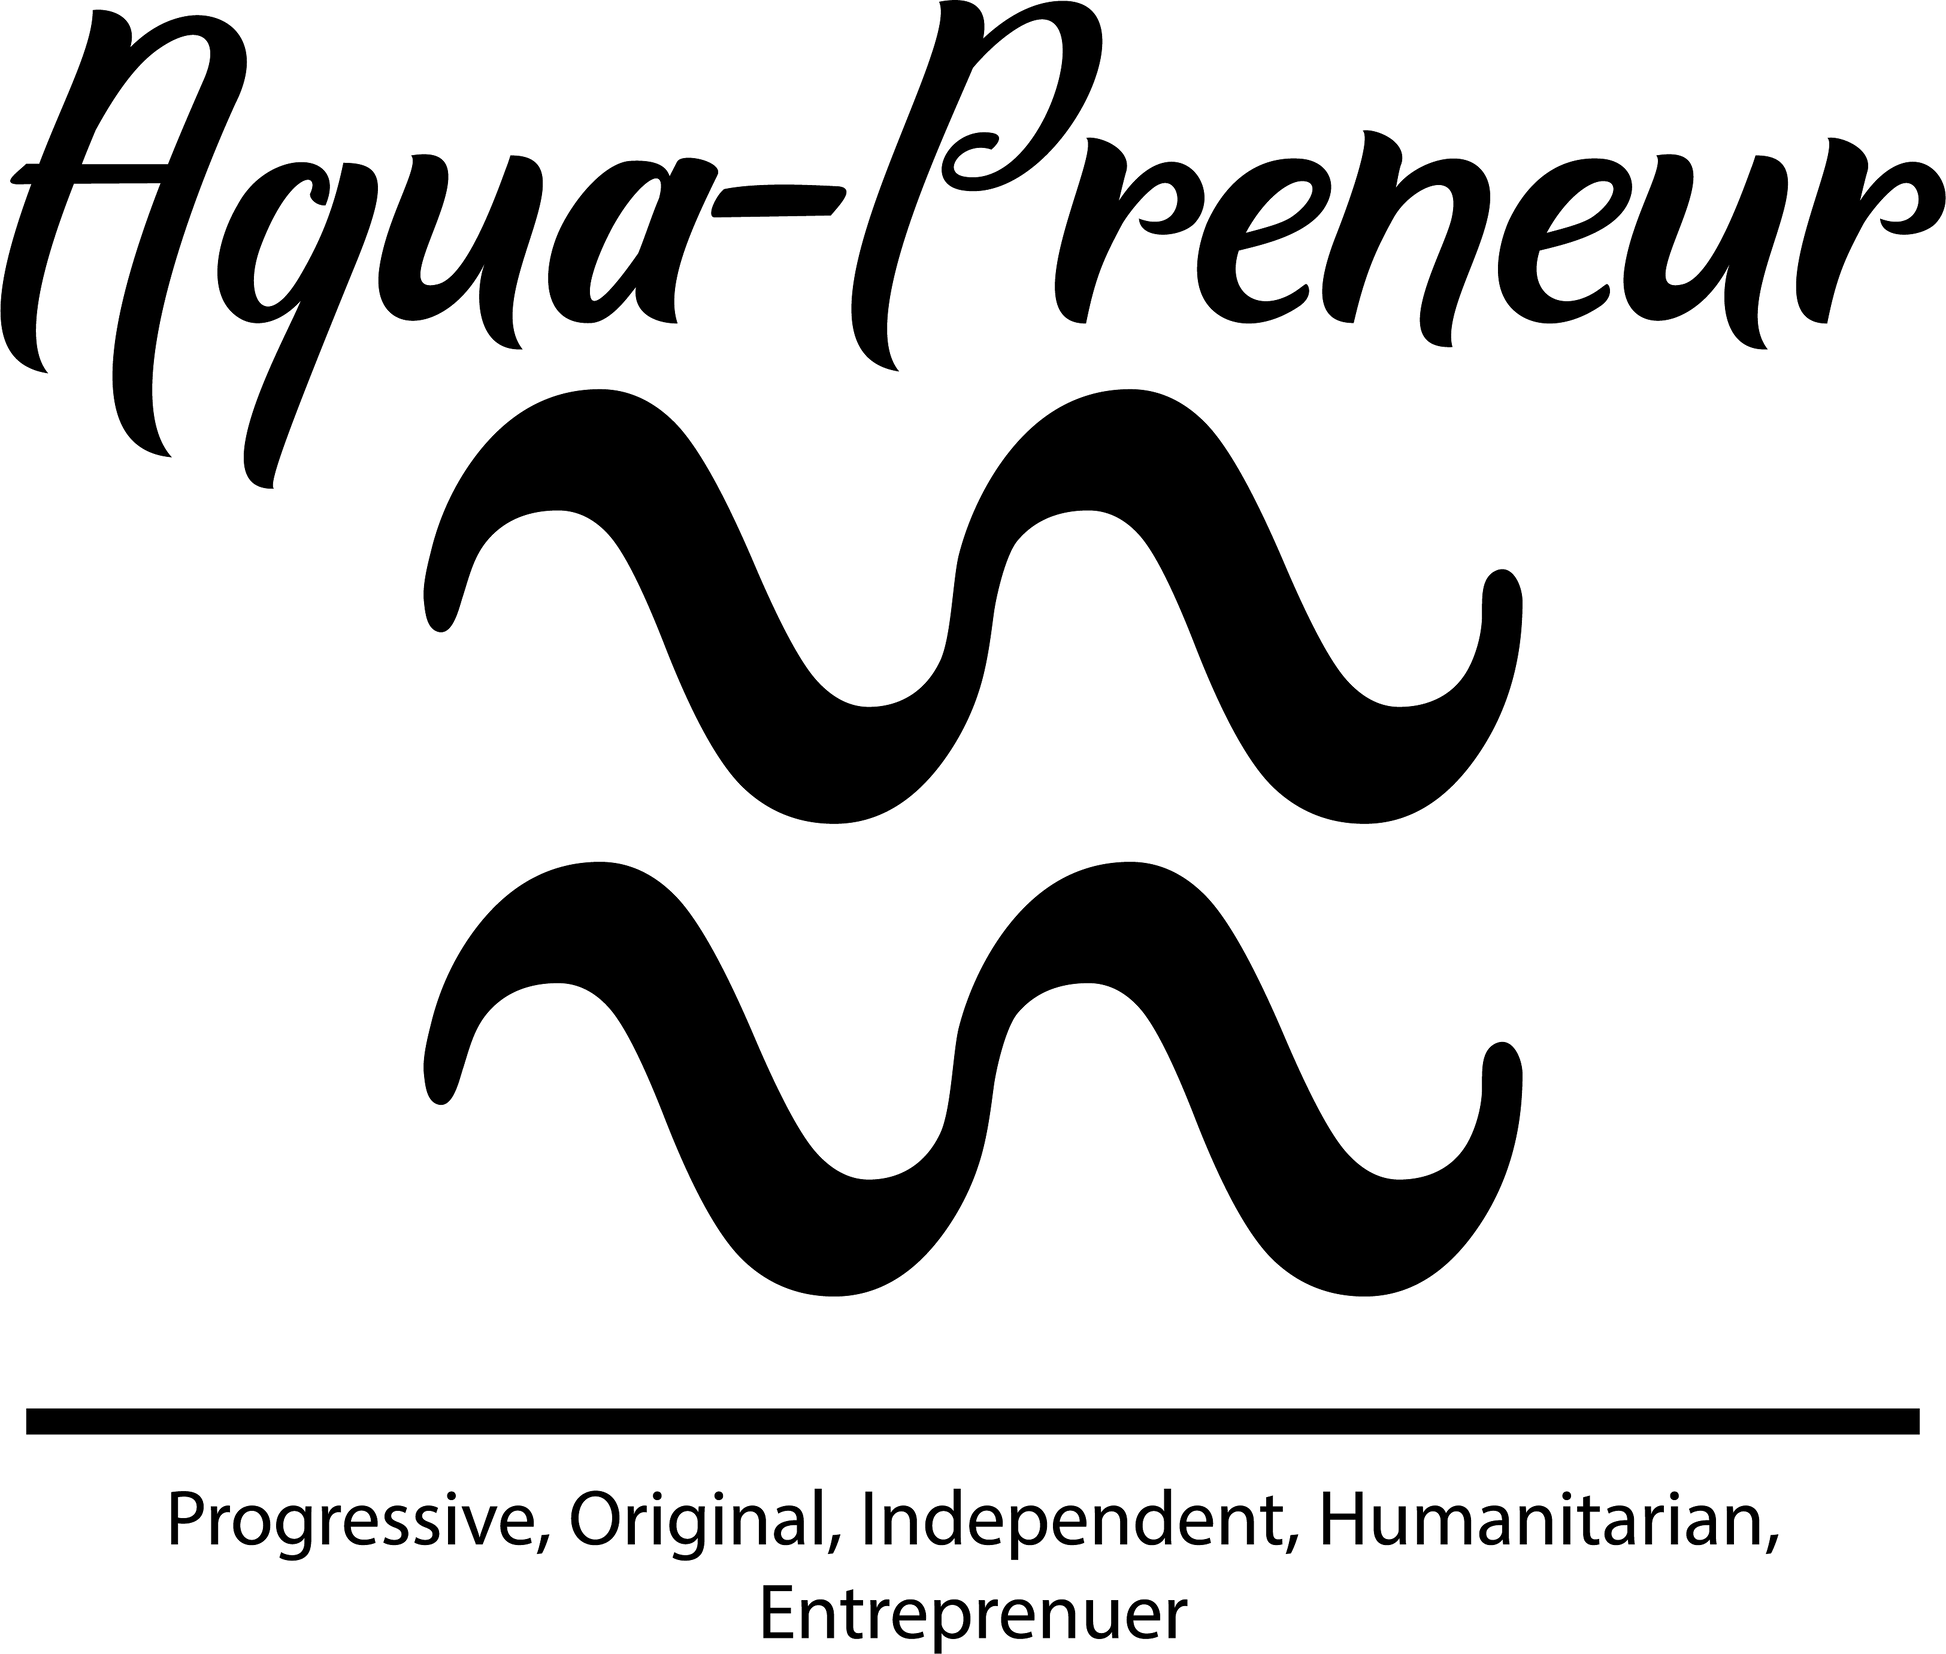 Aqua-preneur art